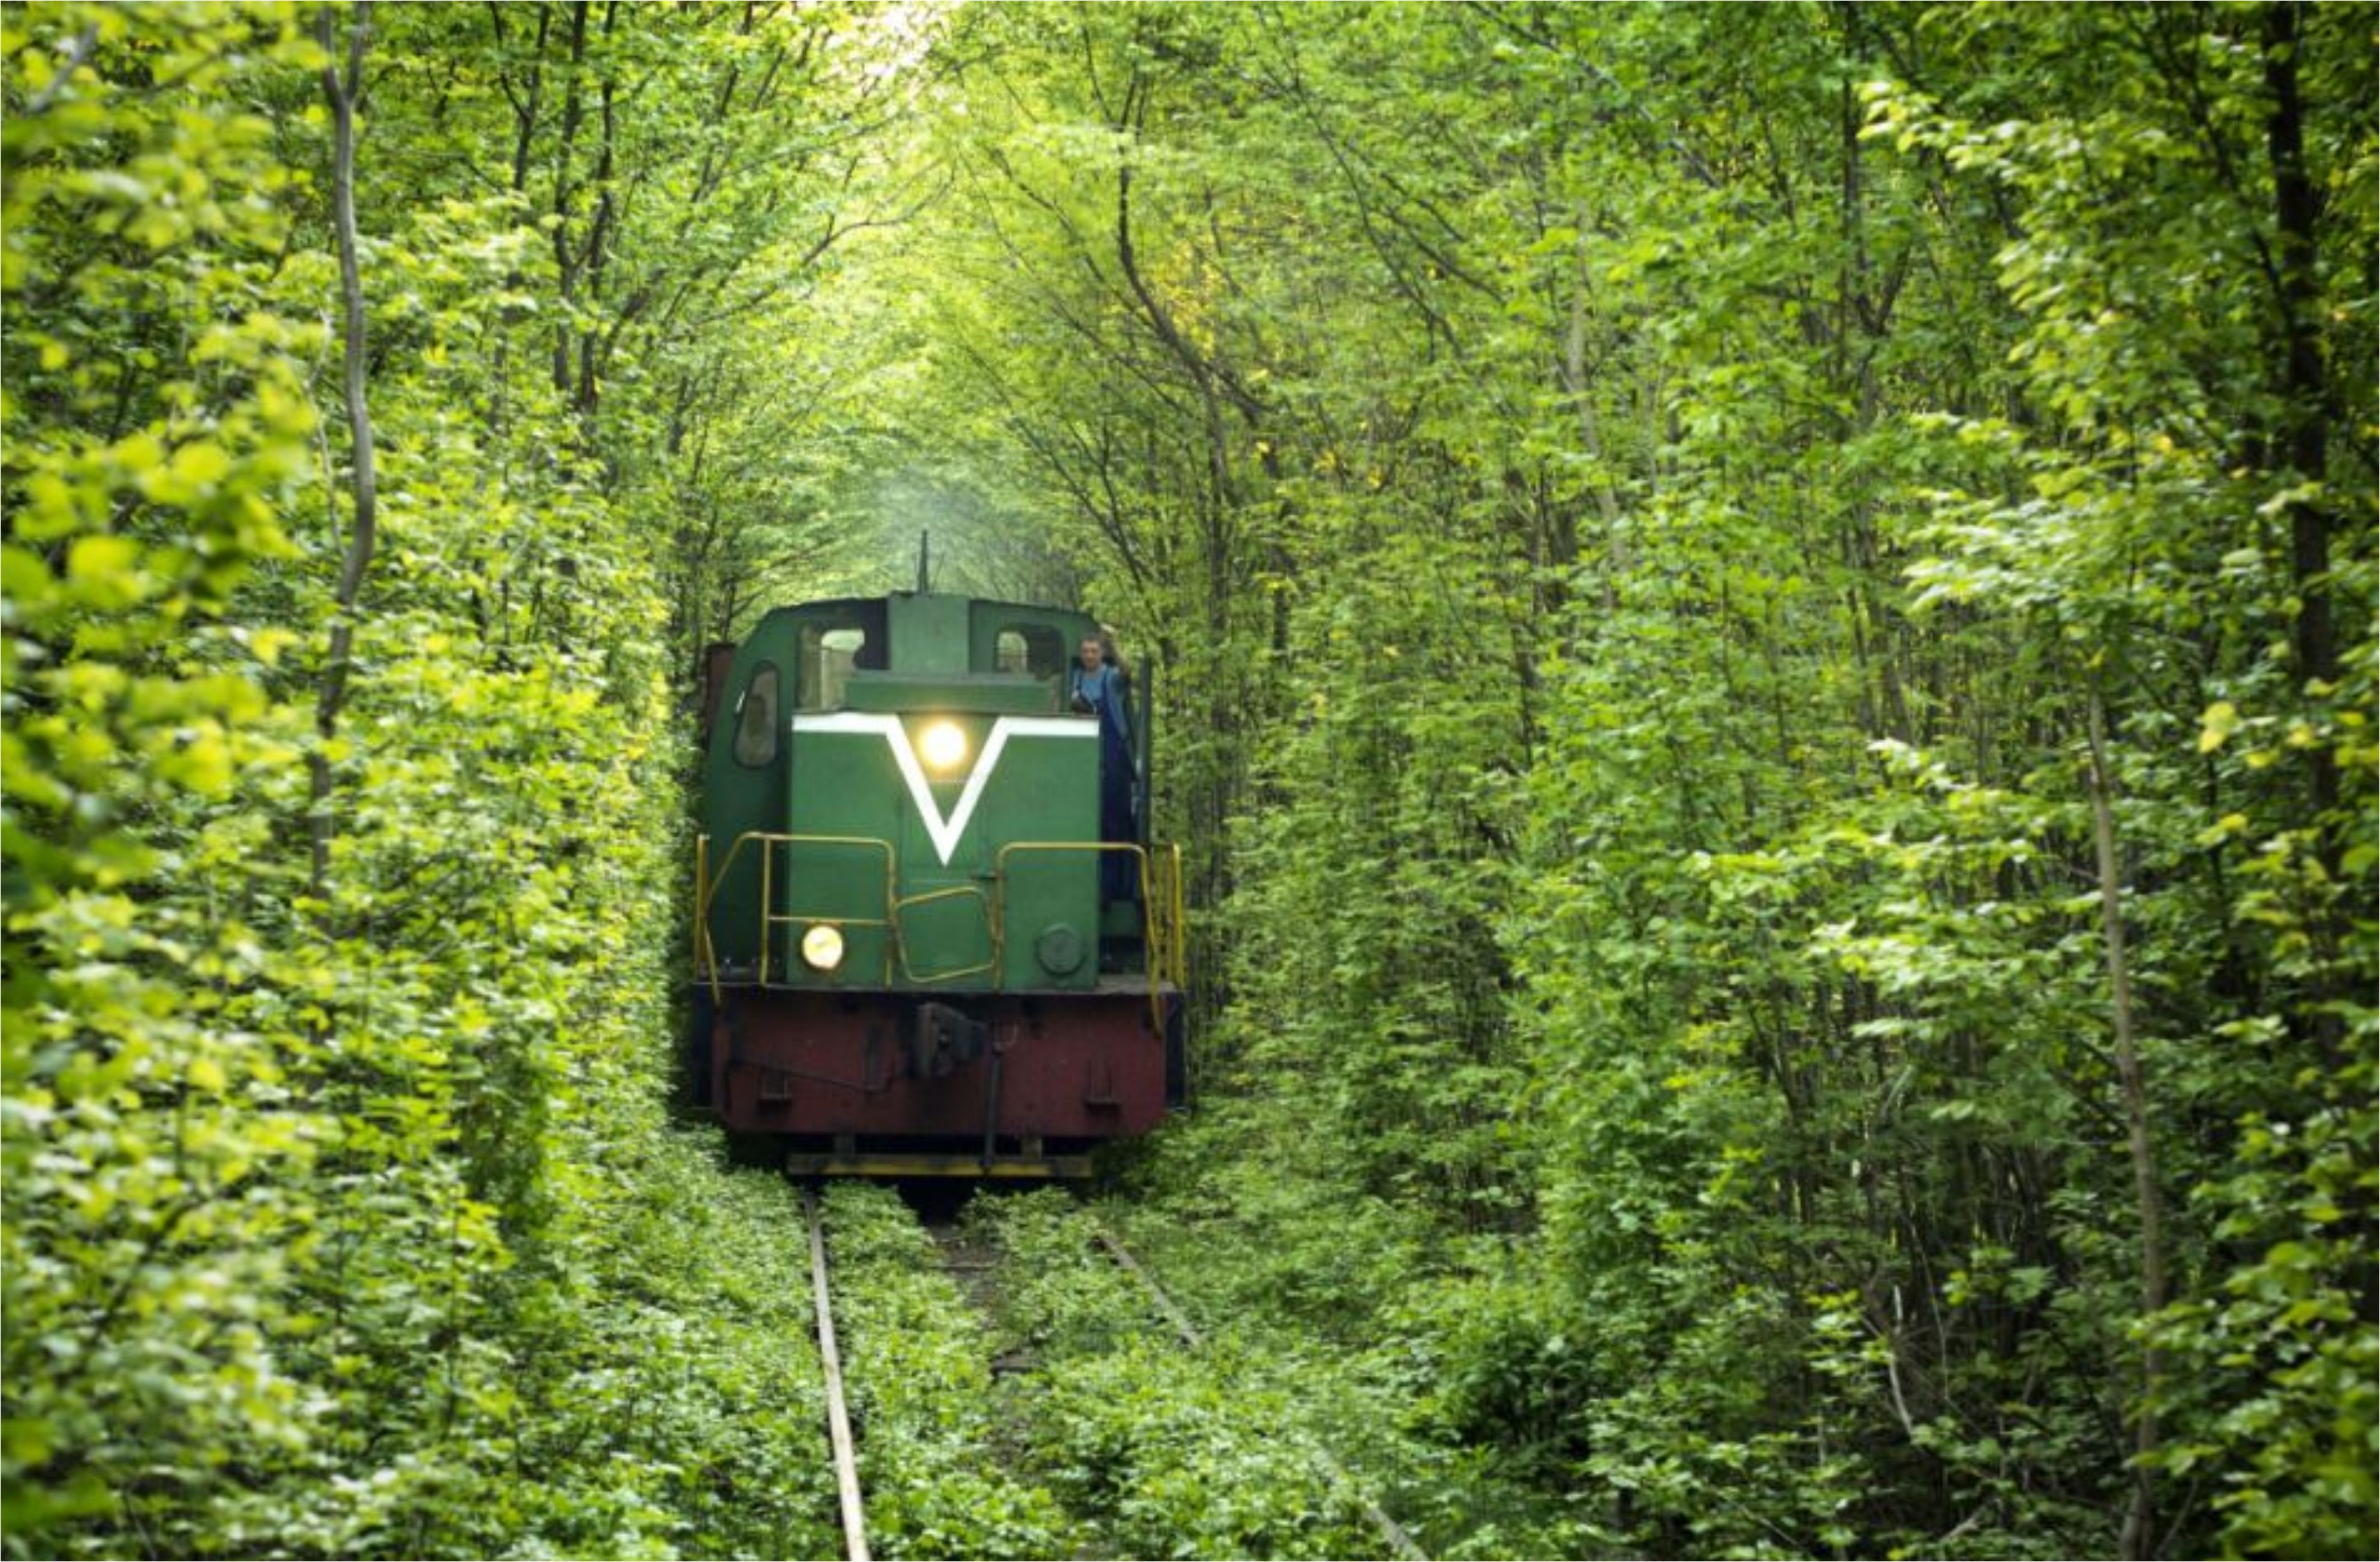 بالصور والفيديو.. أكثر 10 رحلات سكك حديدية إمتاعا وتشويقا في العالم